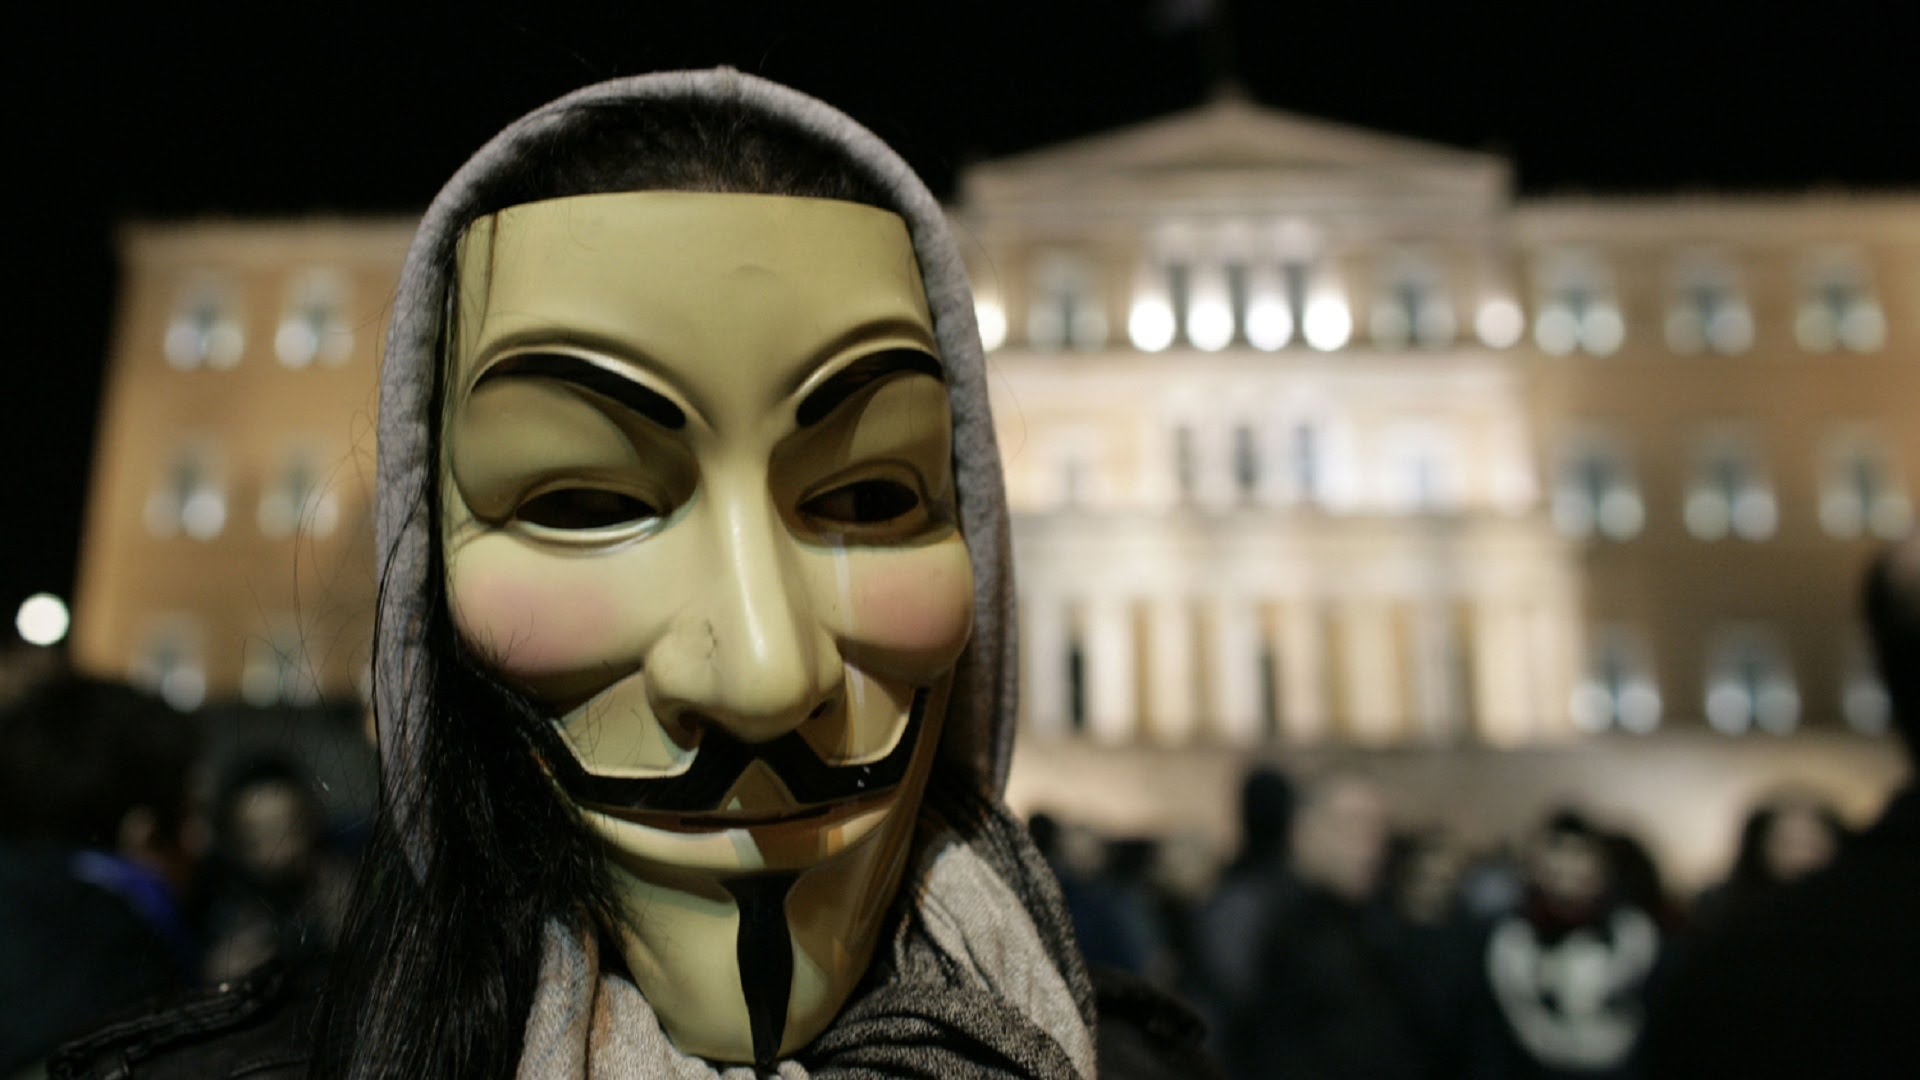 VIDEO: Hakeru grupa “Anonymous” nākusi klajā ar jaunu vēstījumu pasaulei..